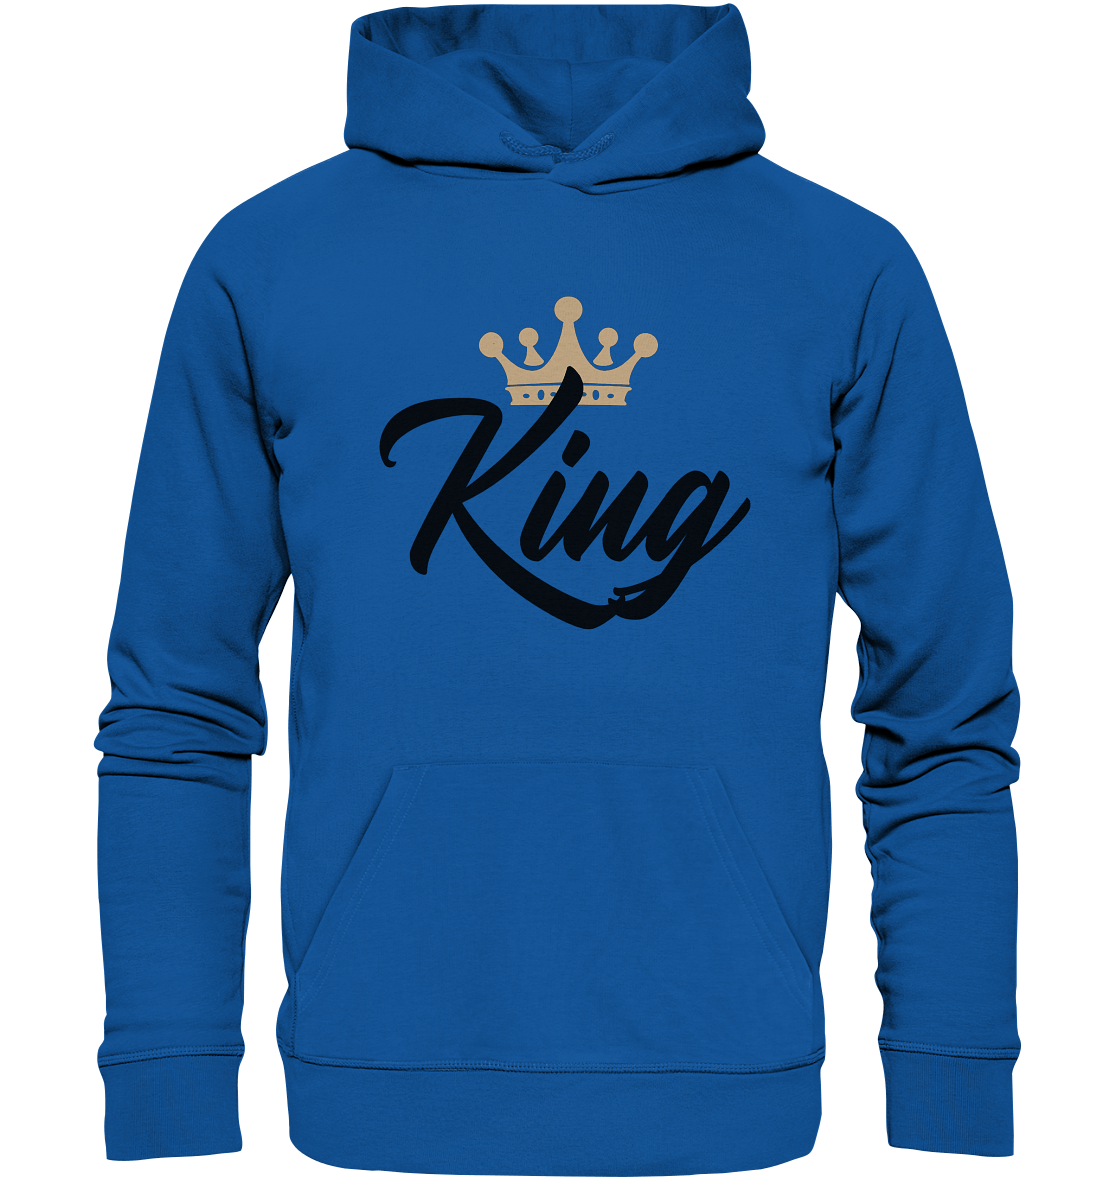 Partnerlook King Hoodie in royal blau